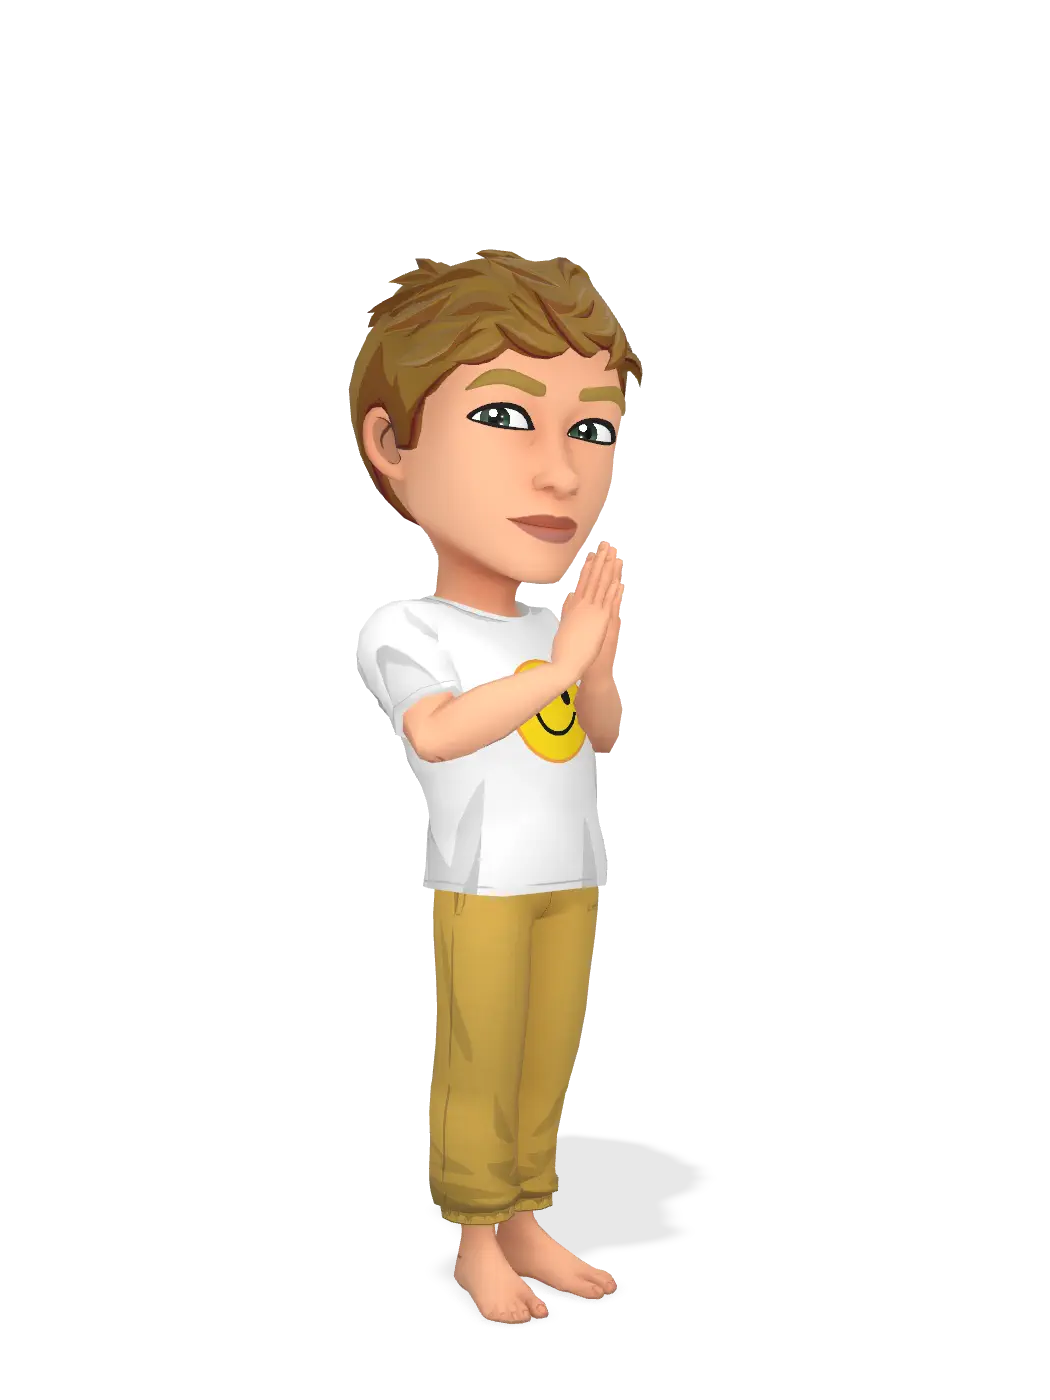 3D Bitmoji for adrianbaqueiroa avatar